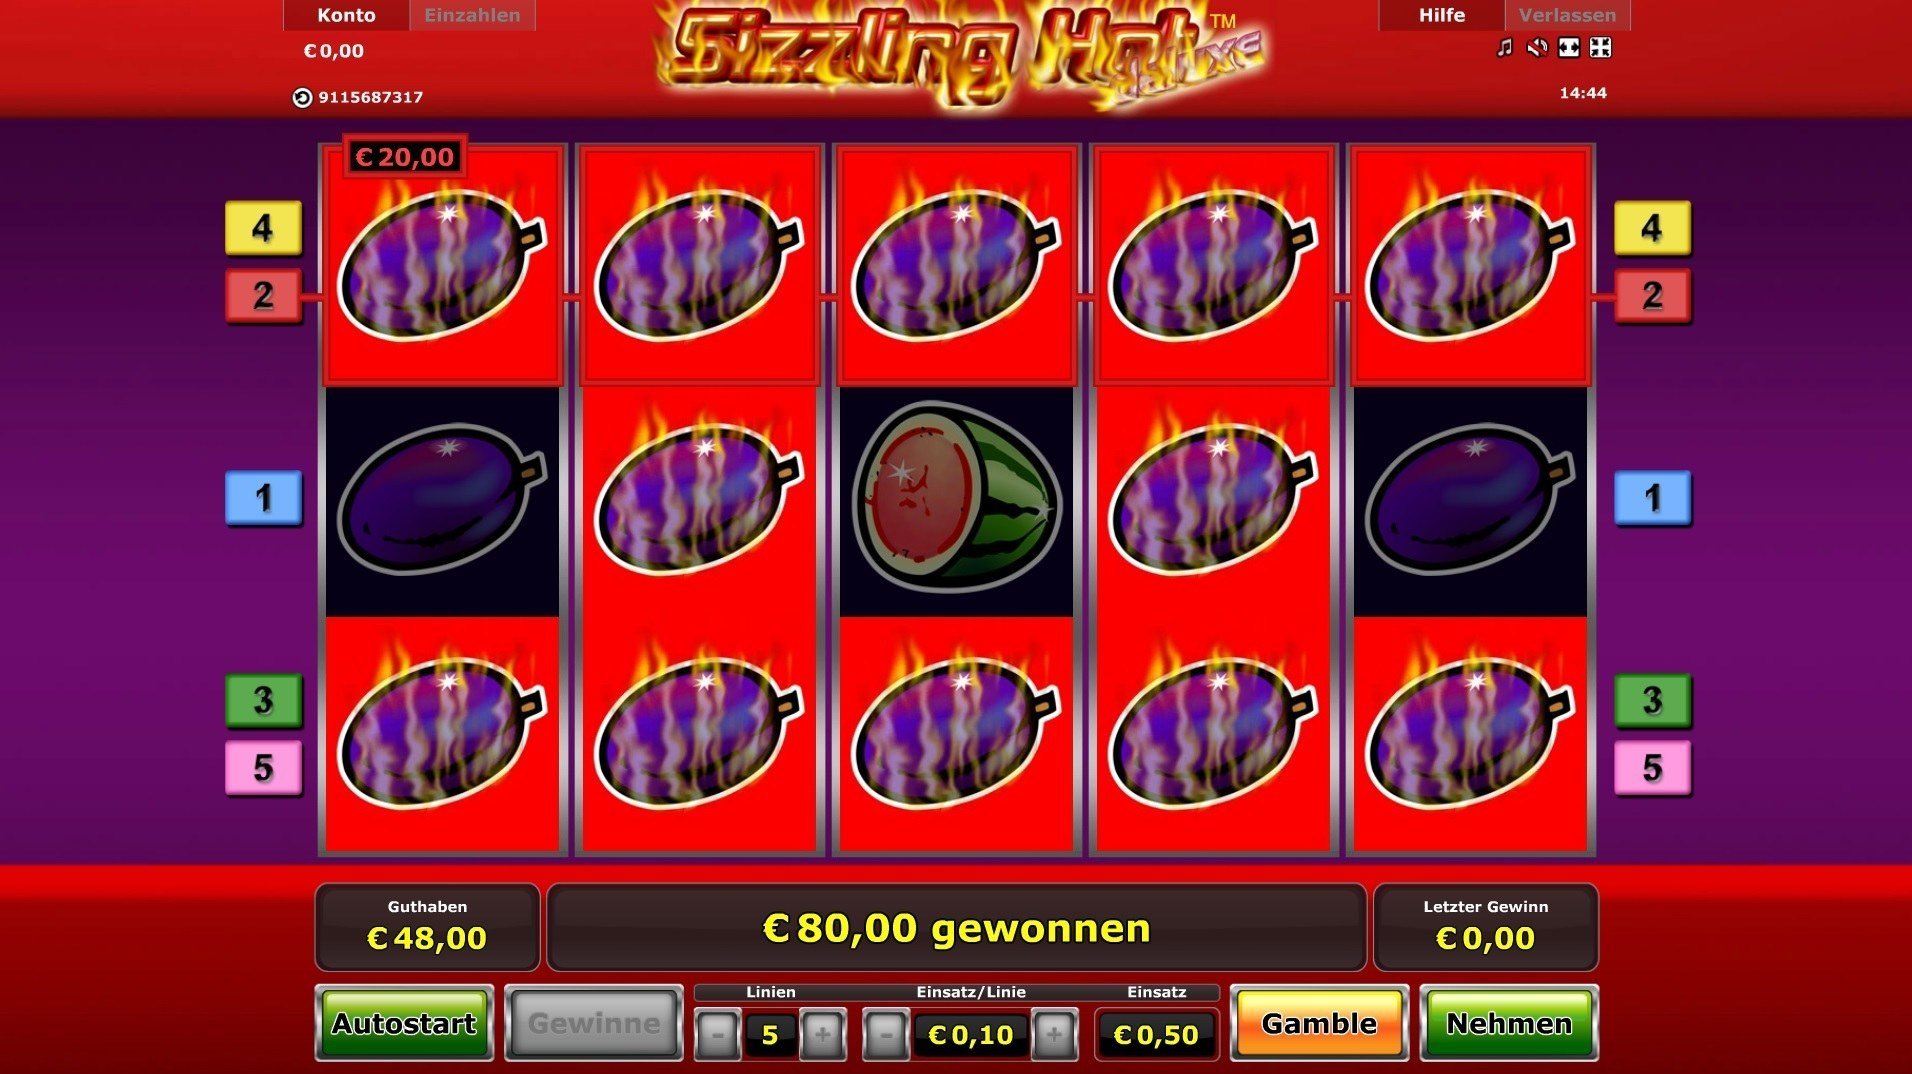 Online Casino Per Handy Aufladen